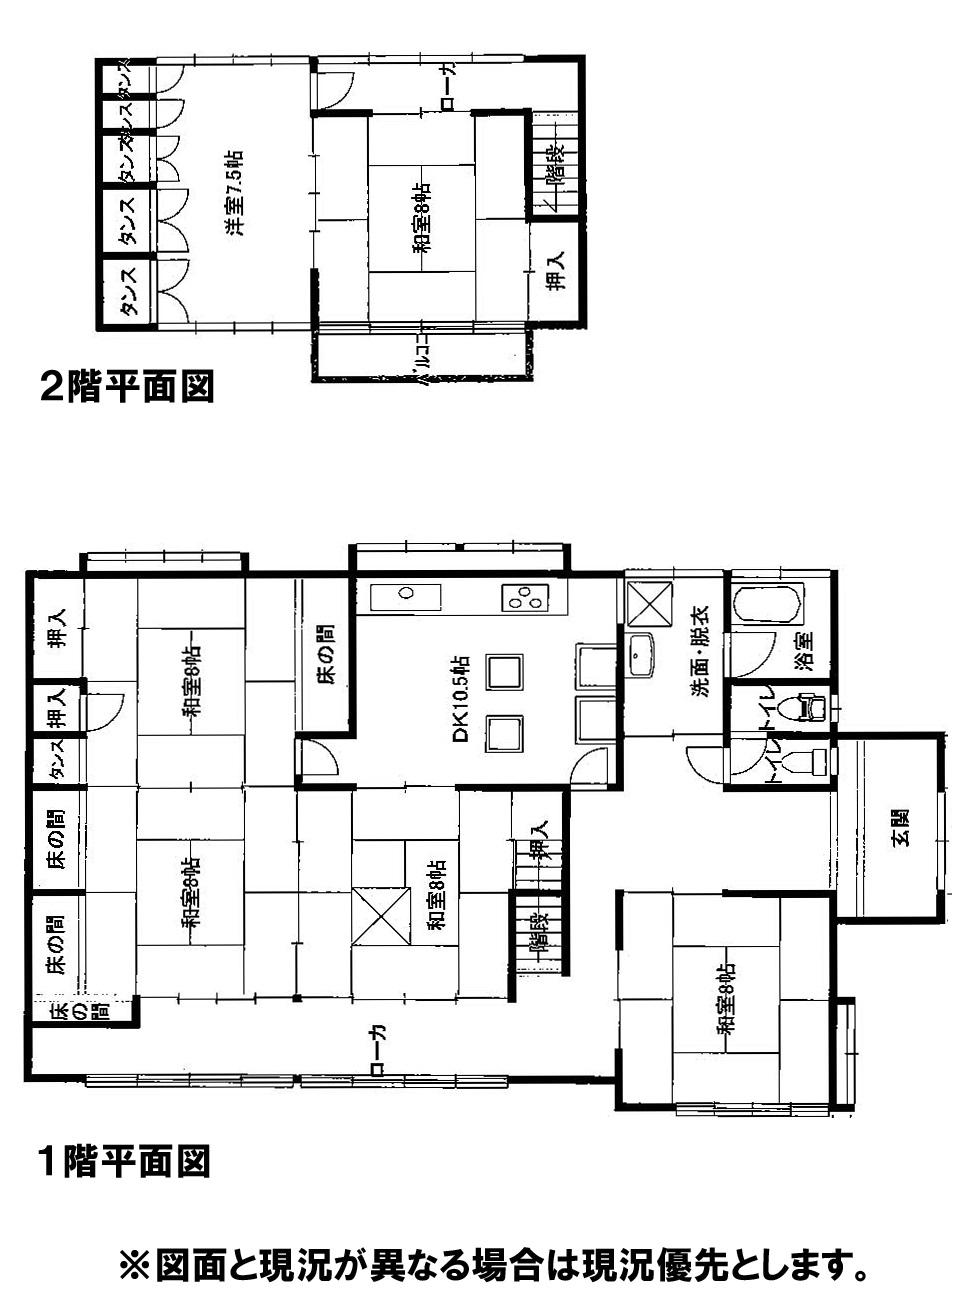 Compartment figure. 13.8 million yen, 6DK, Land area 298.31 sq m , Building area 163.32 sq m 6DK